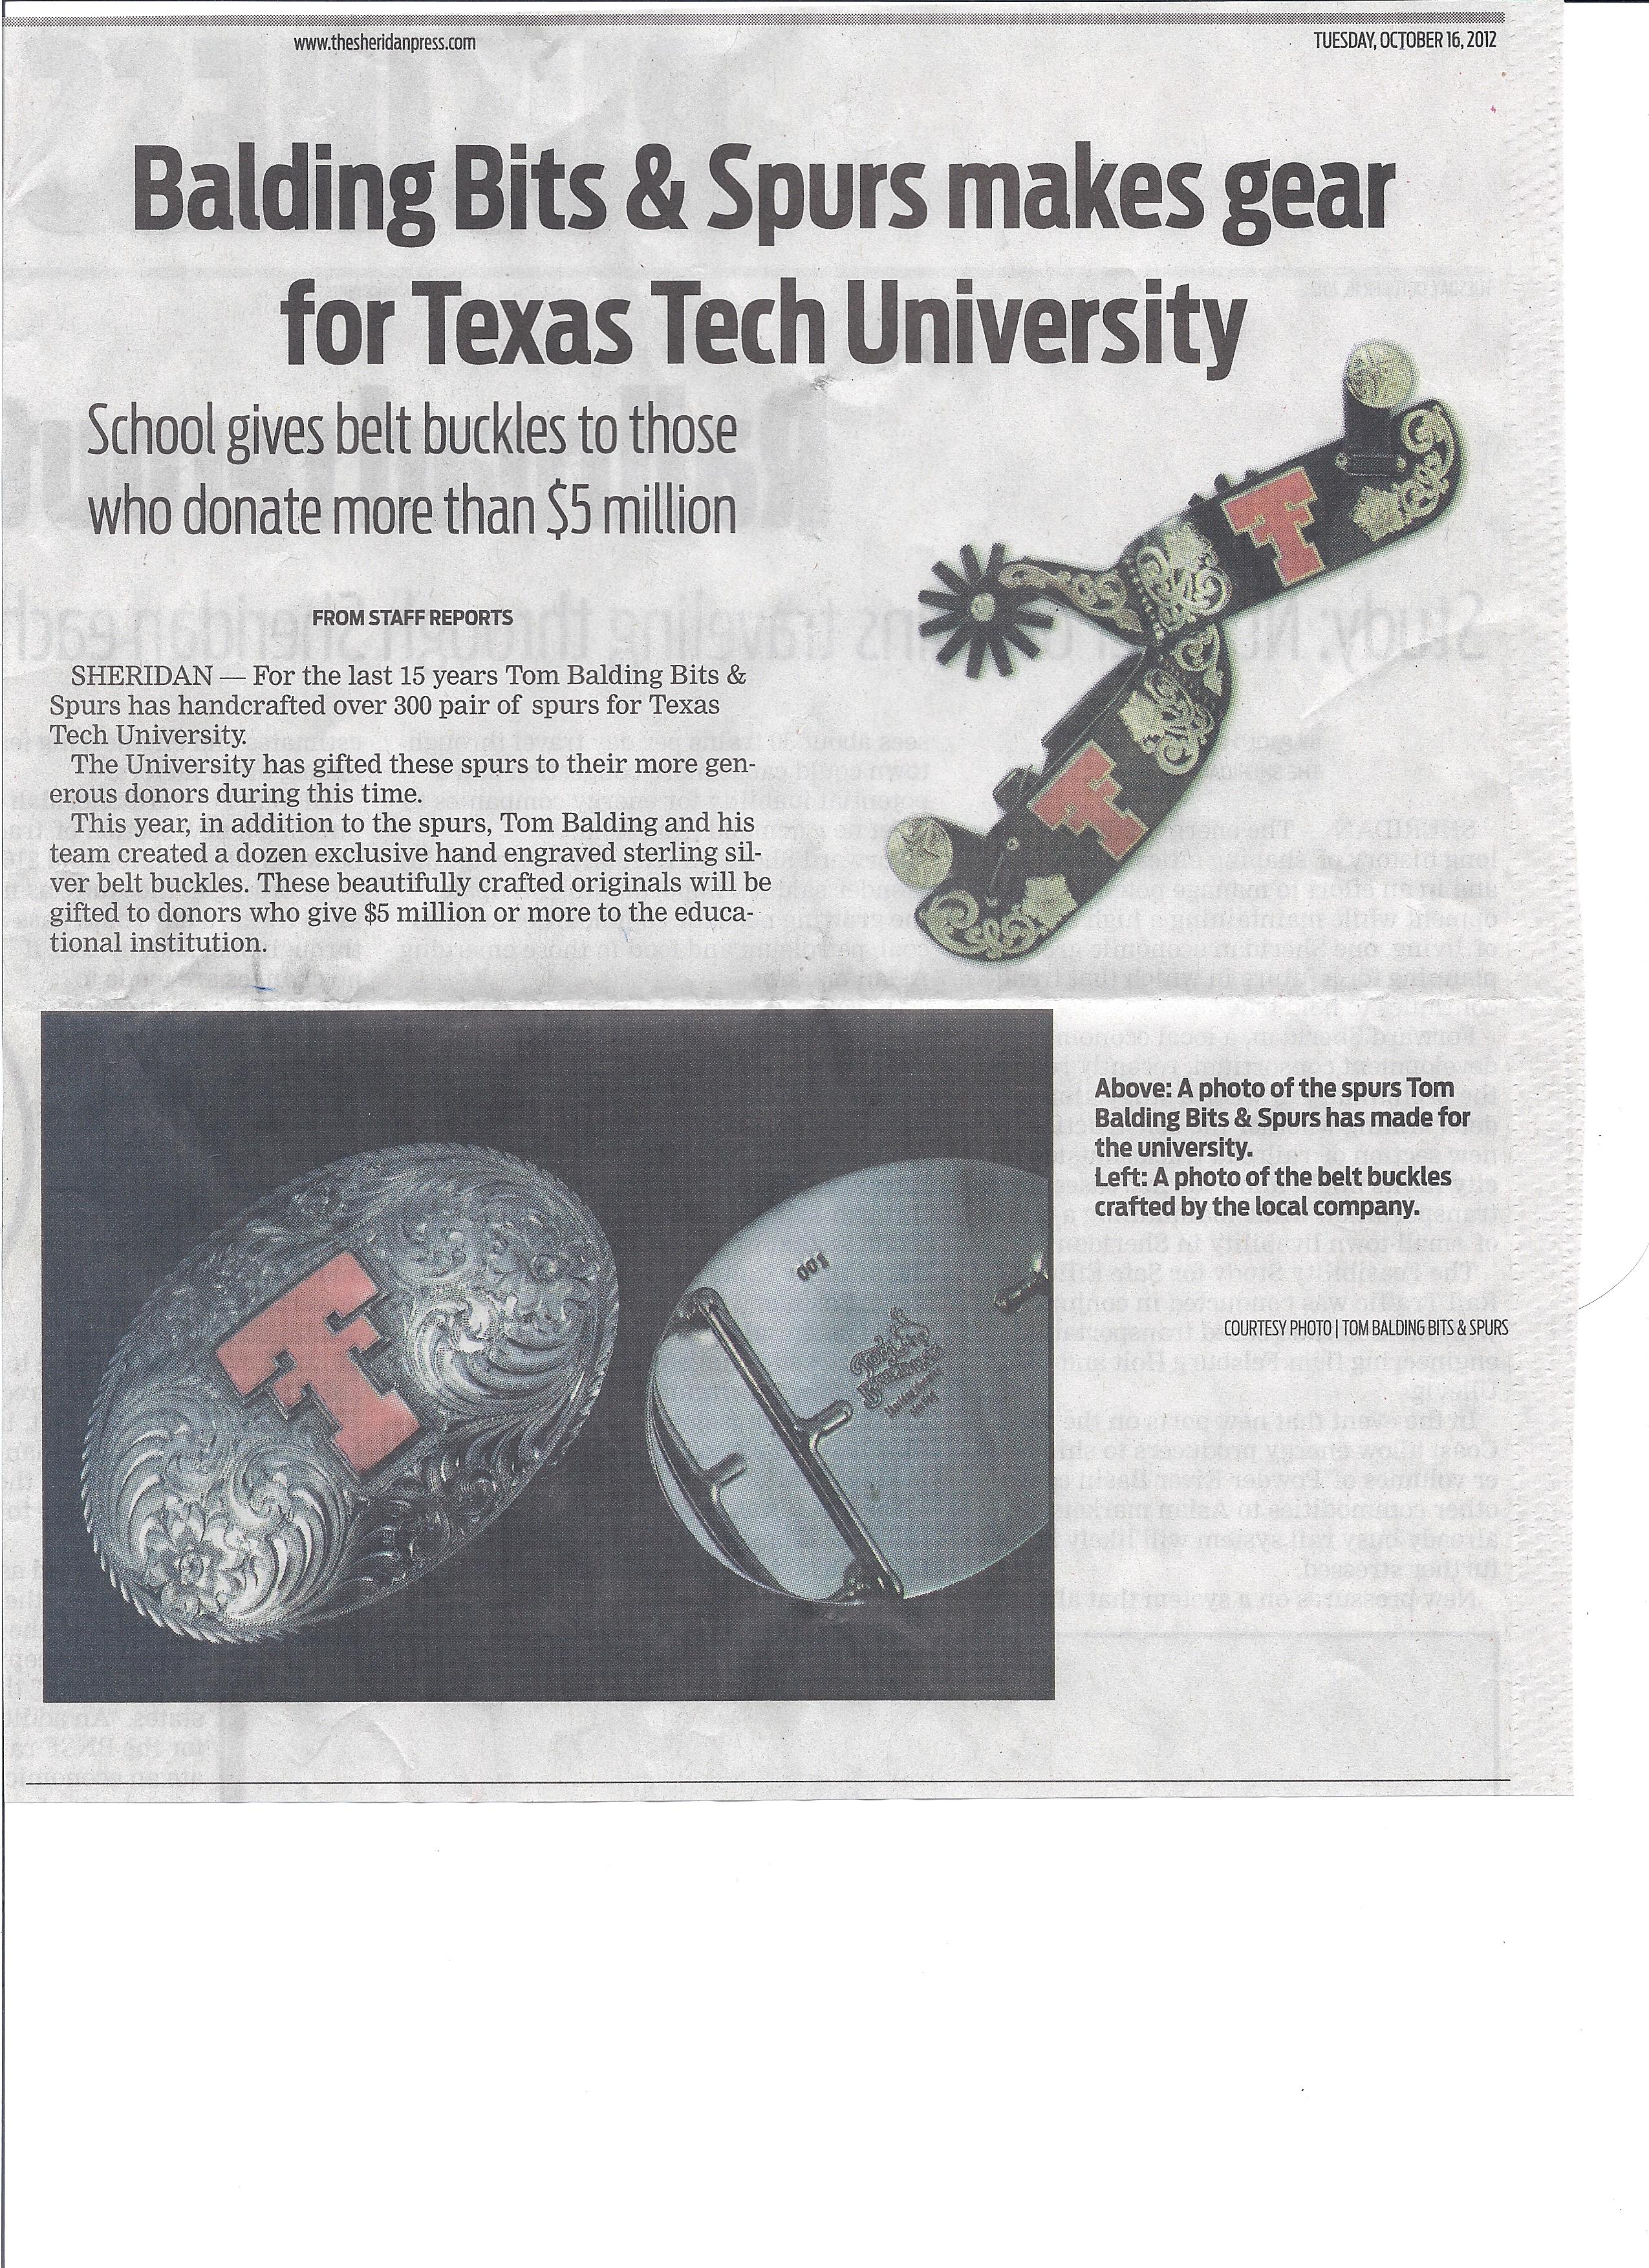 Texas Tech Article